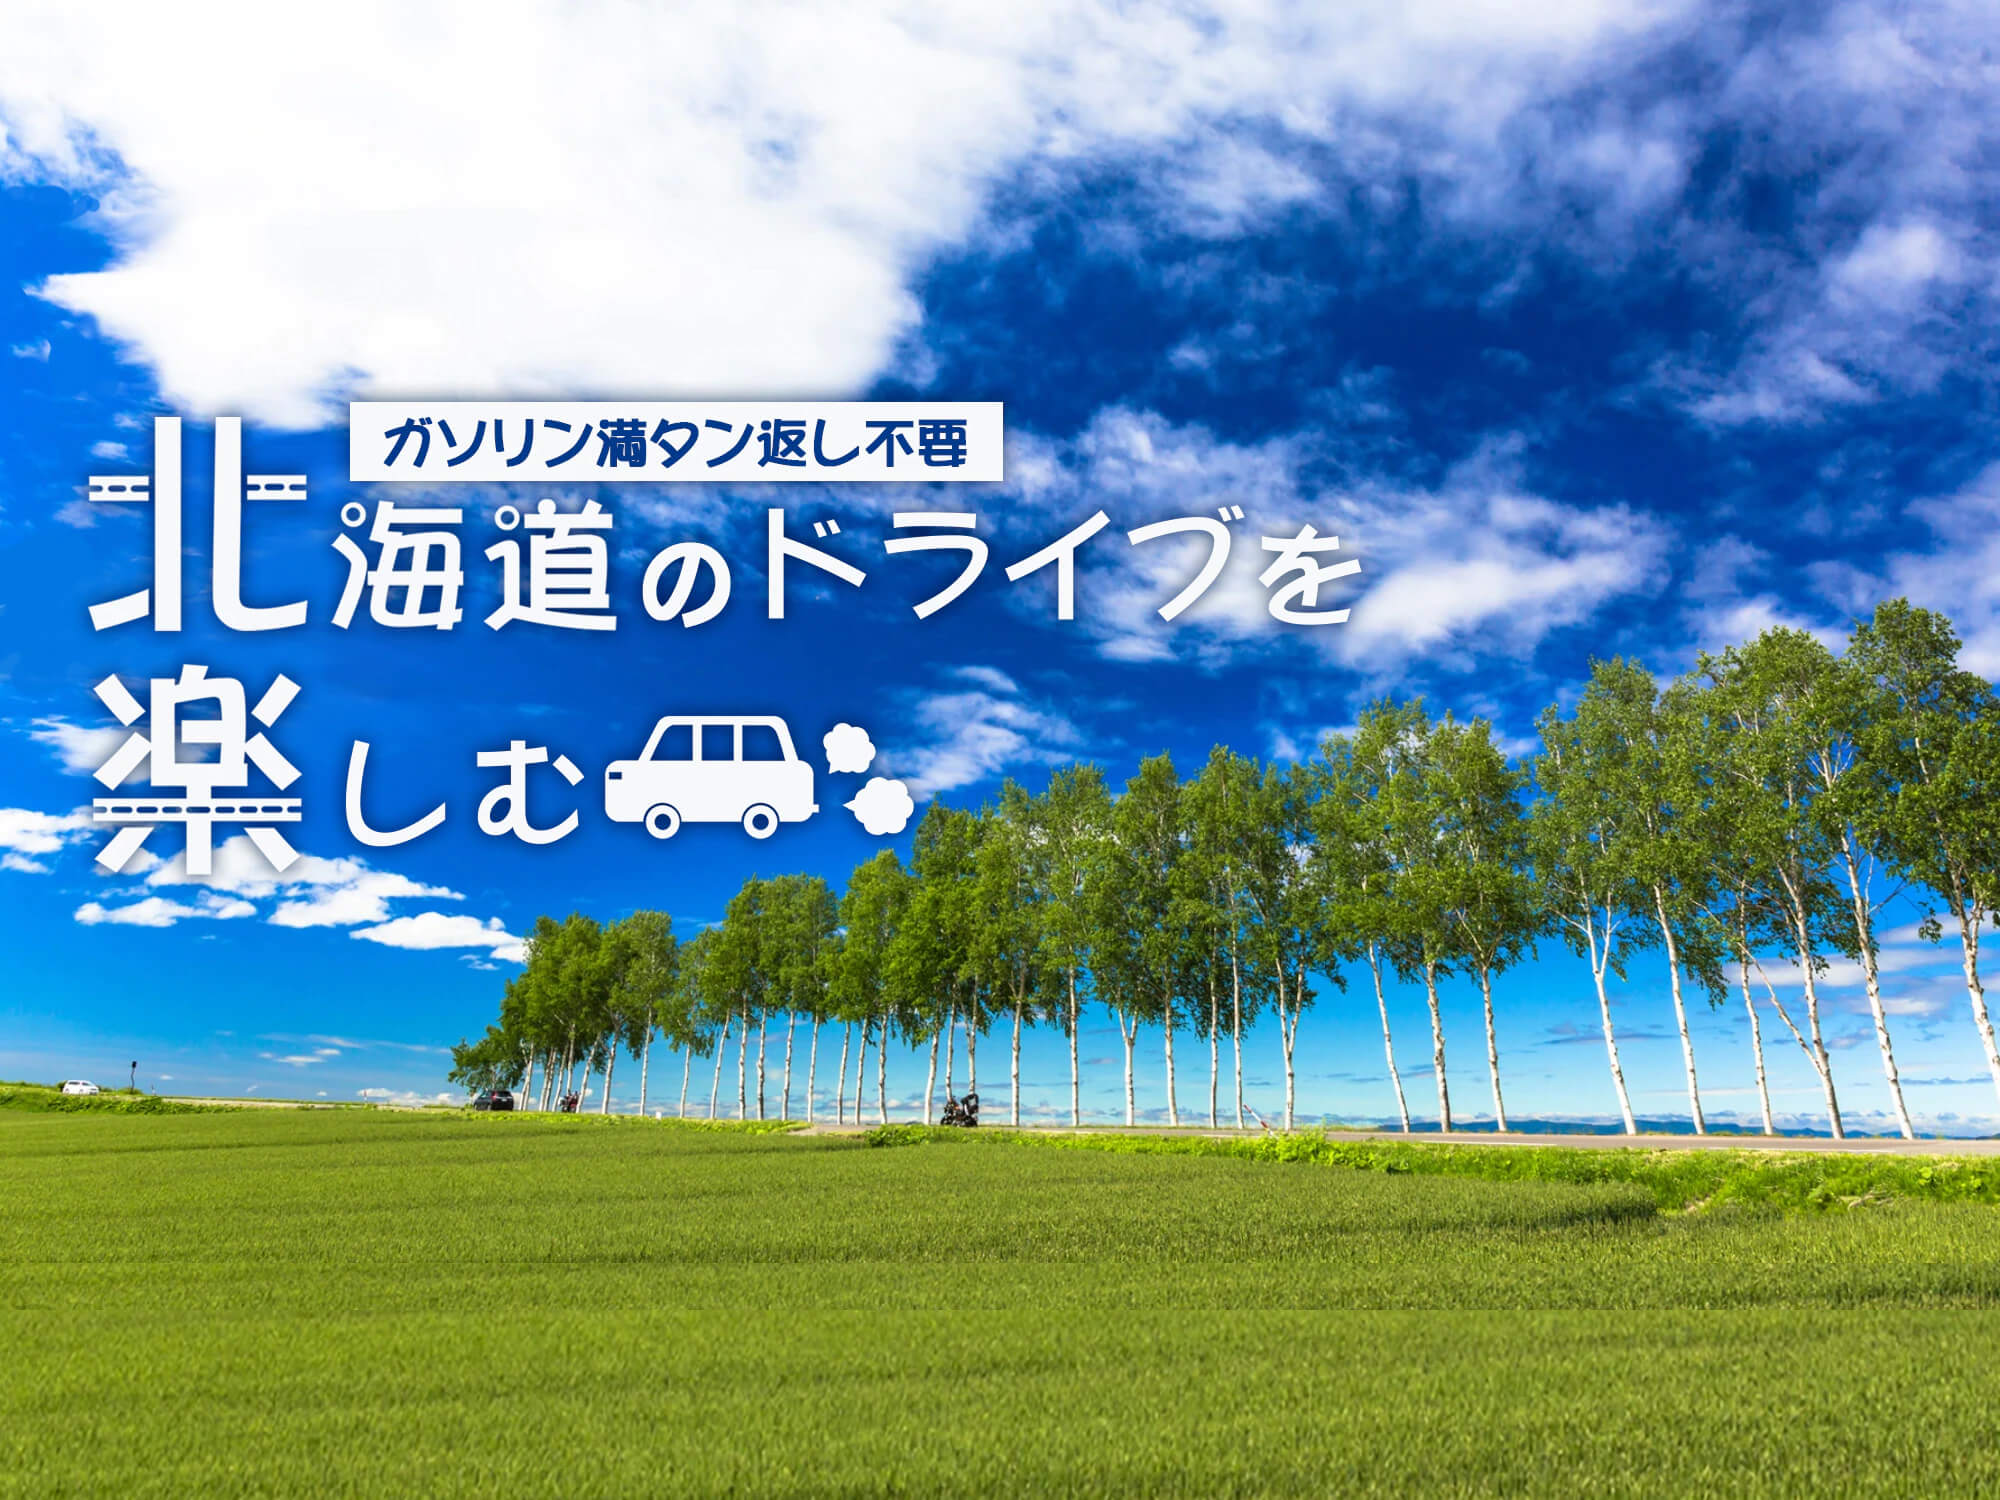 ドライブ北海道キャンペーン